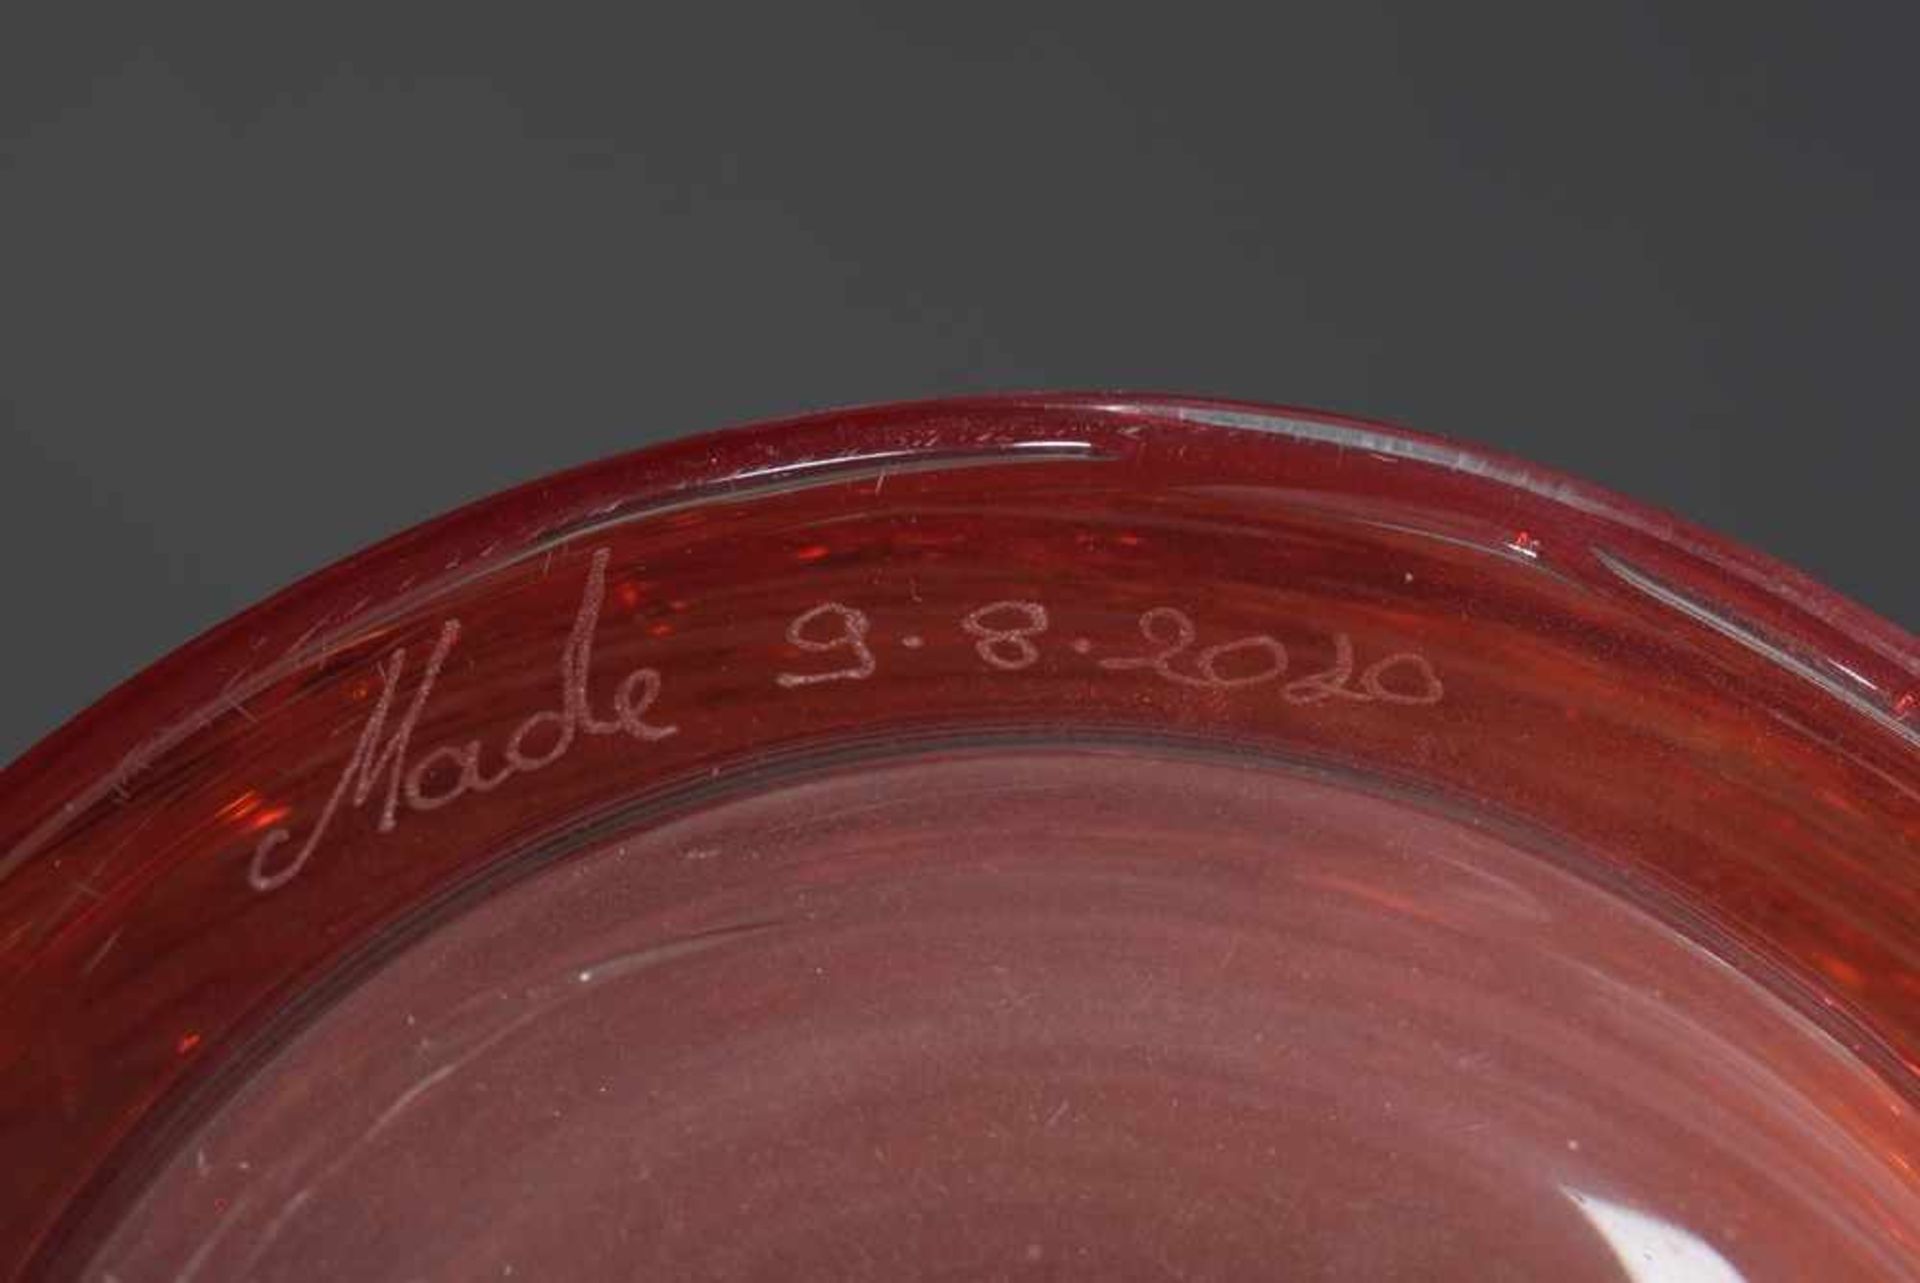 Hohe Murano Vase, farbloses Glas mit rotem Fadenaufschmelzungen, verso sign. "Tino Rossi" sowie dat. - Bild 3 aus 3